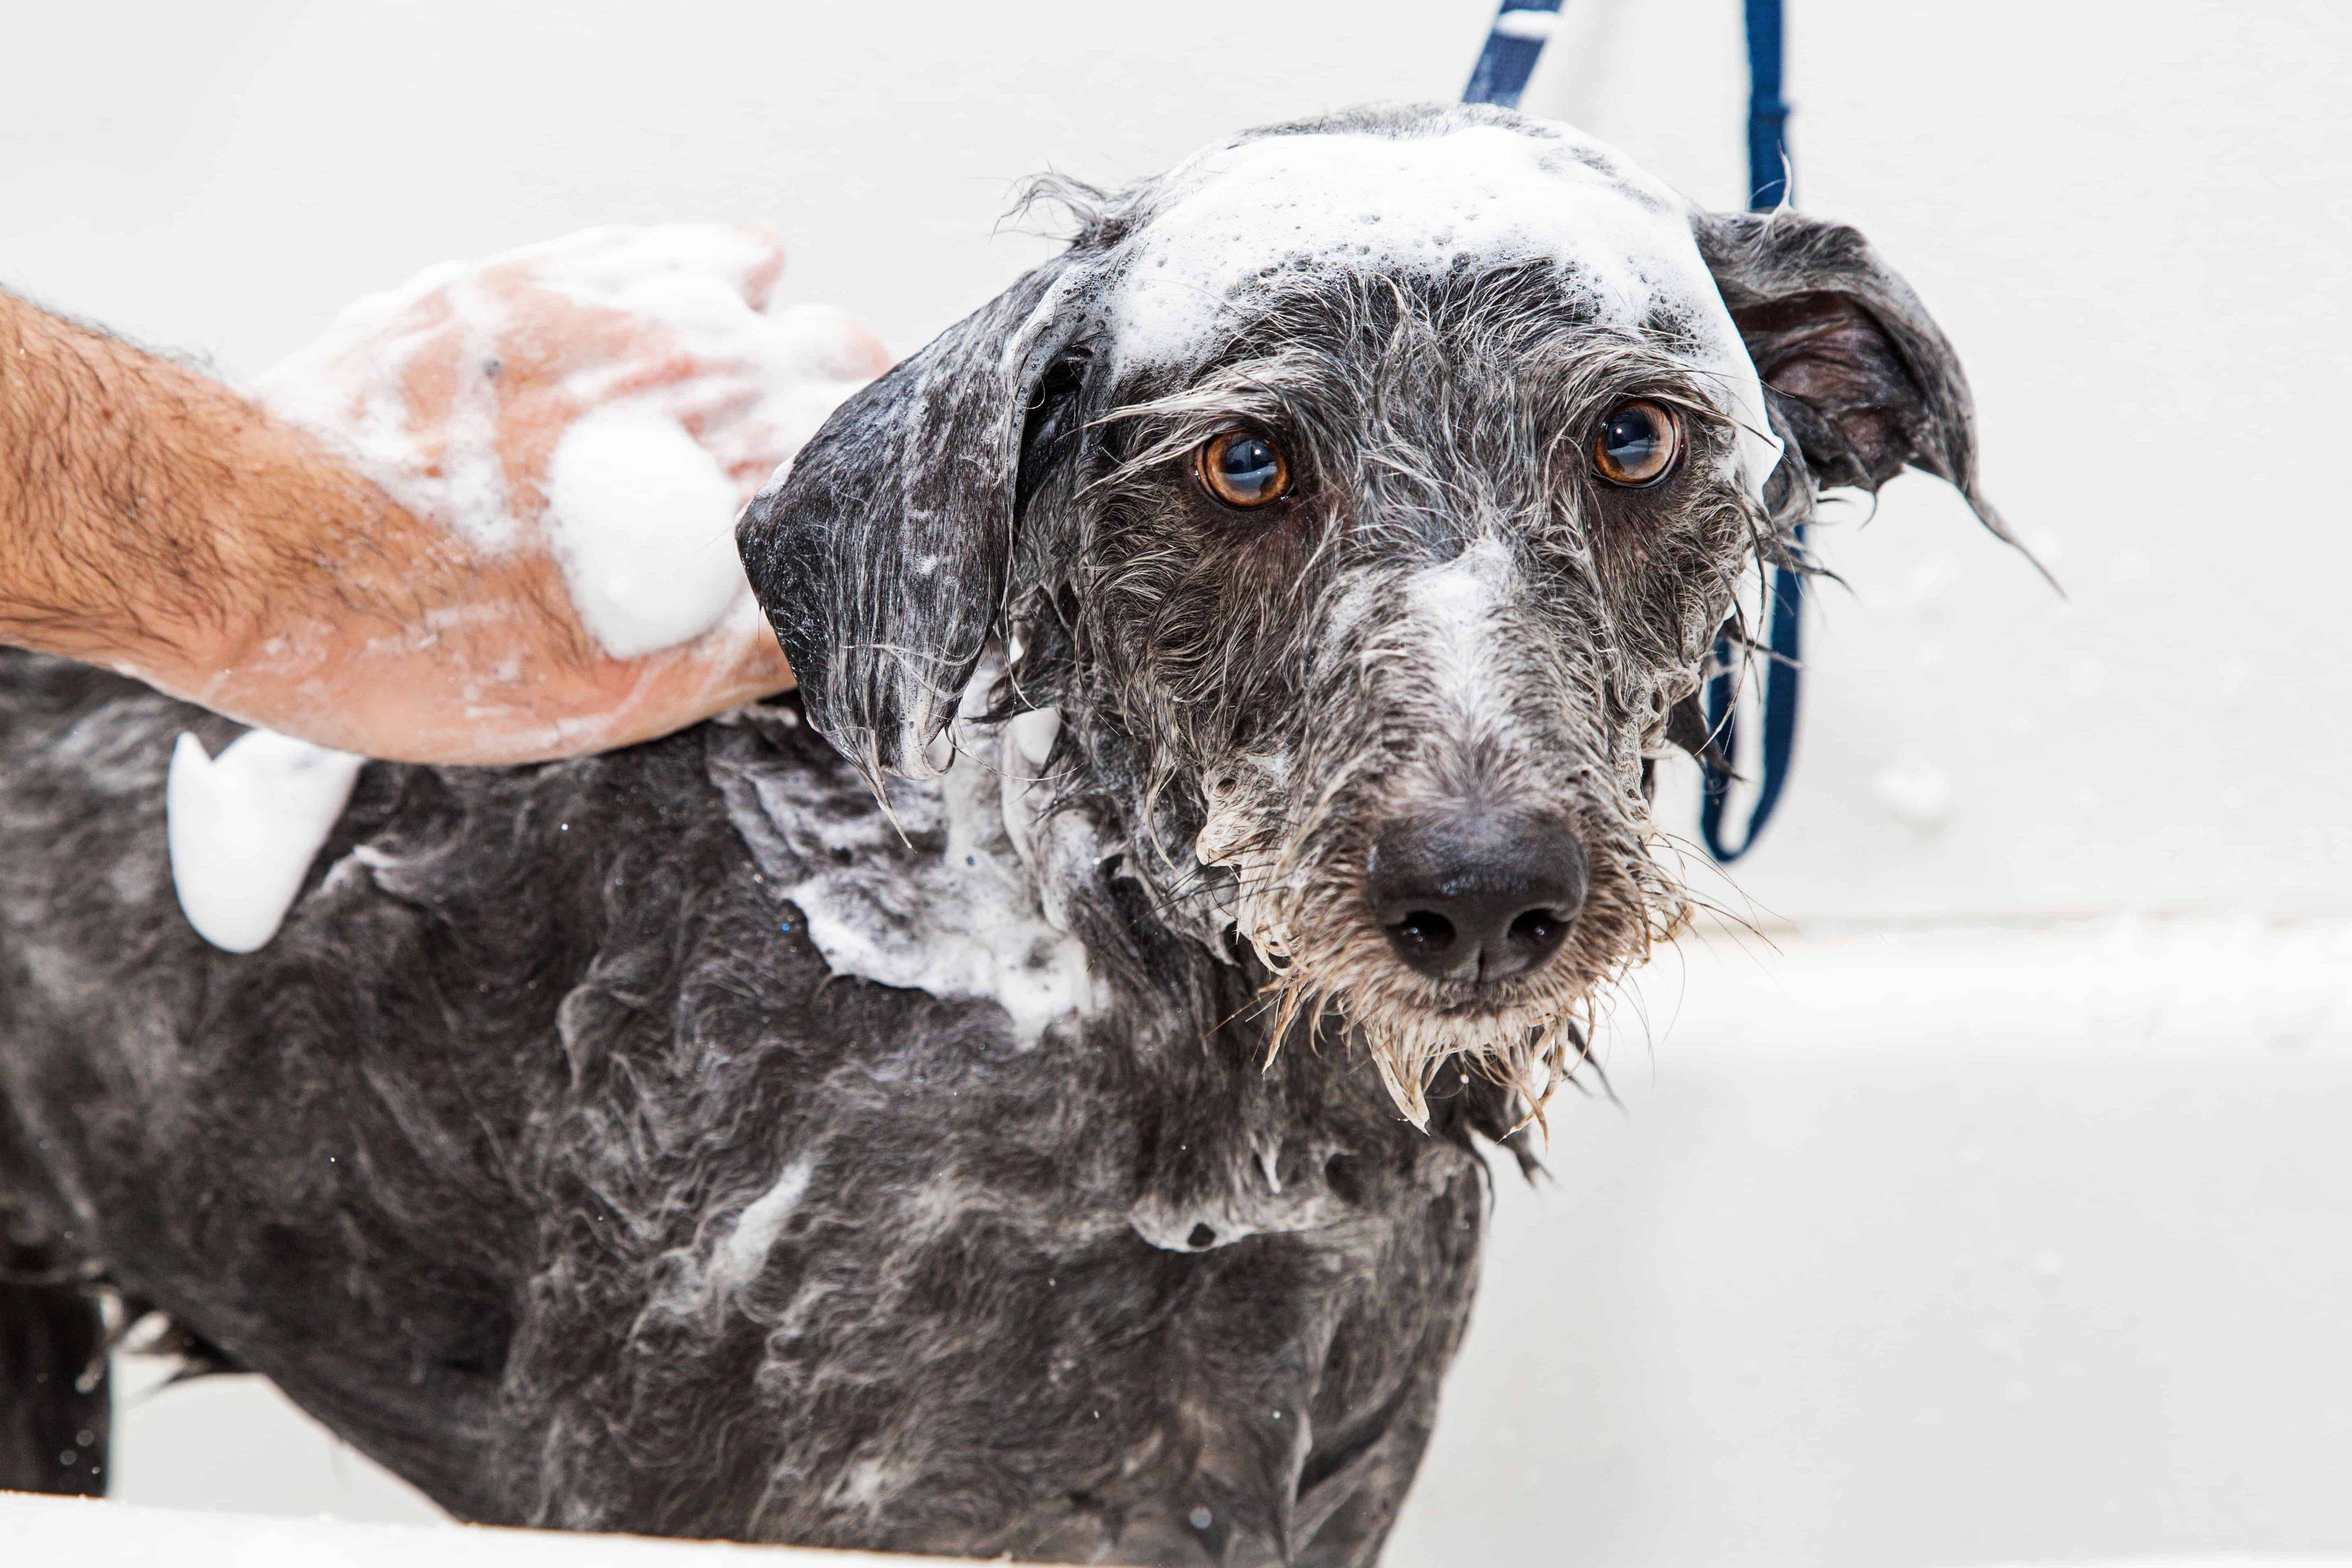 Как часто мыть собаку, можно ли мыть собаку мылом, шампунем